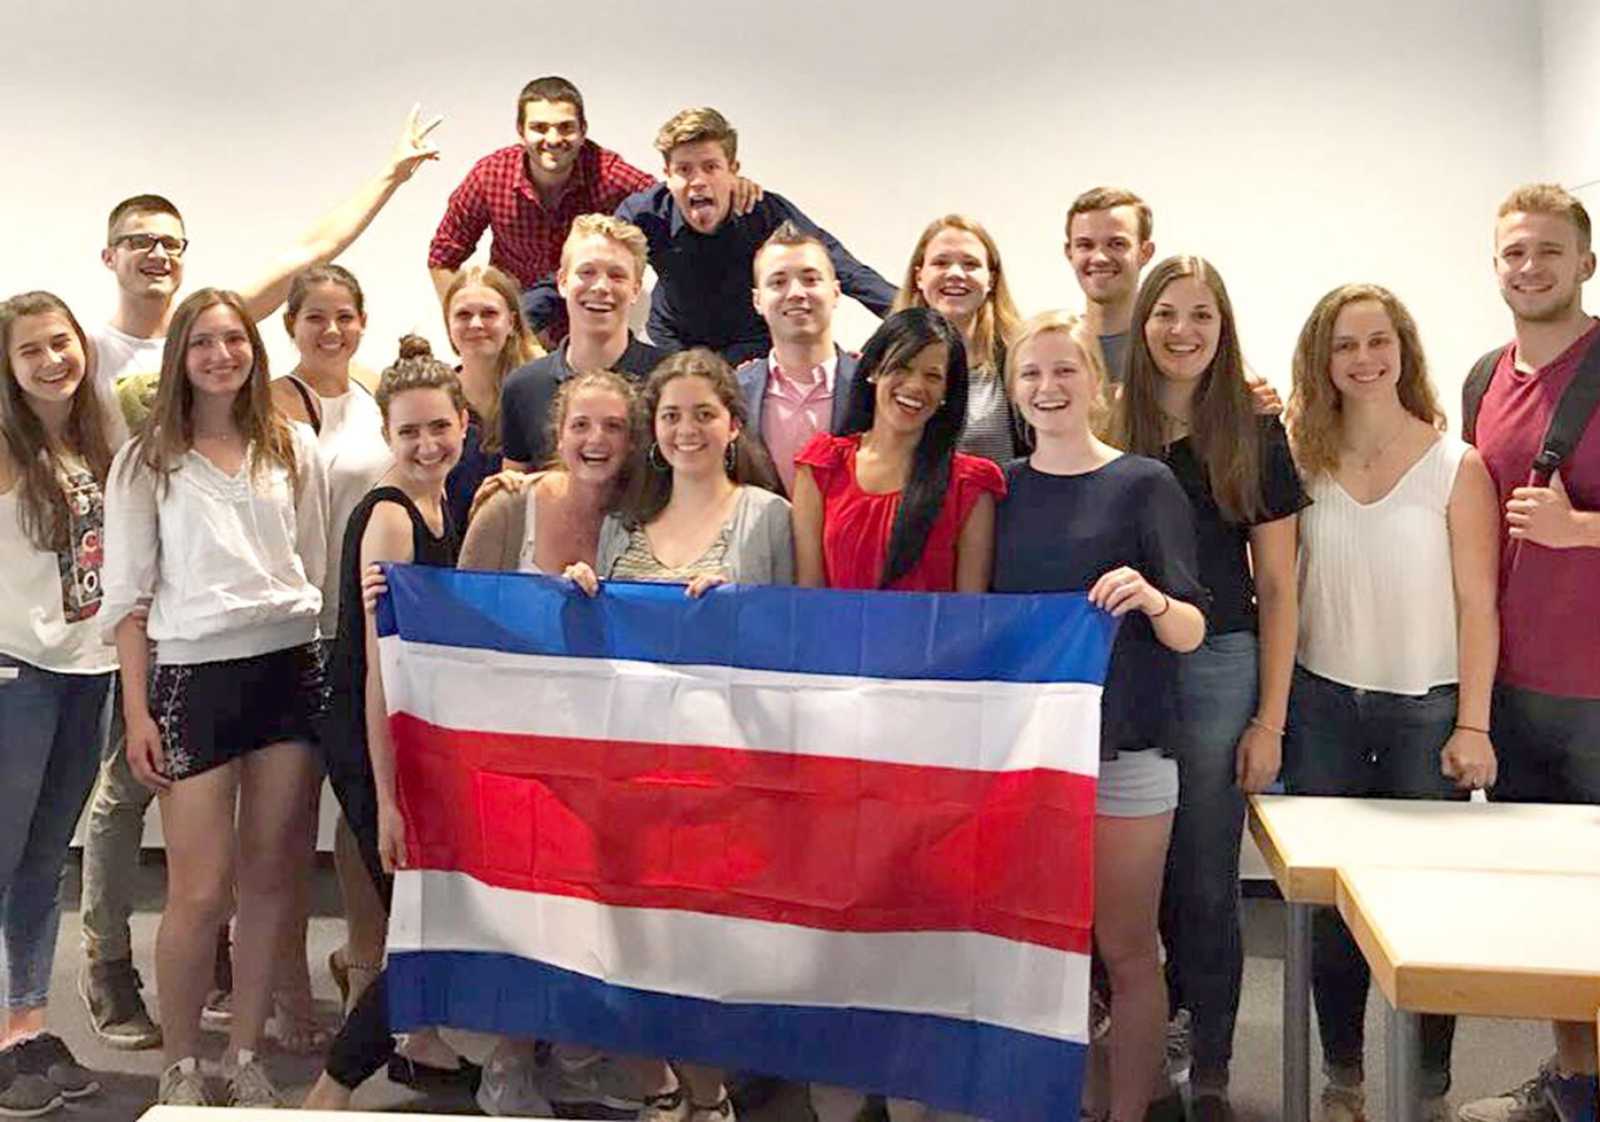 Die internationale Teamarbeit zwischen den deutschen und costa-ricanischen Studierenden war für alle eine bereichernde Erfahrung. (Foto: privat)